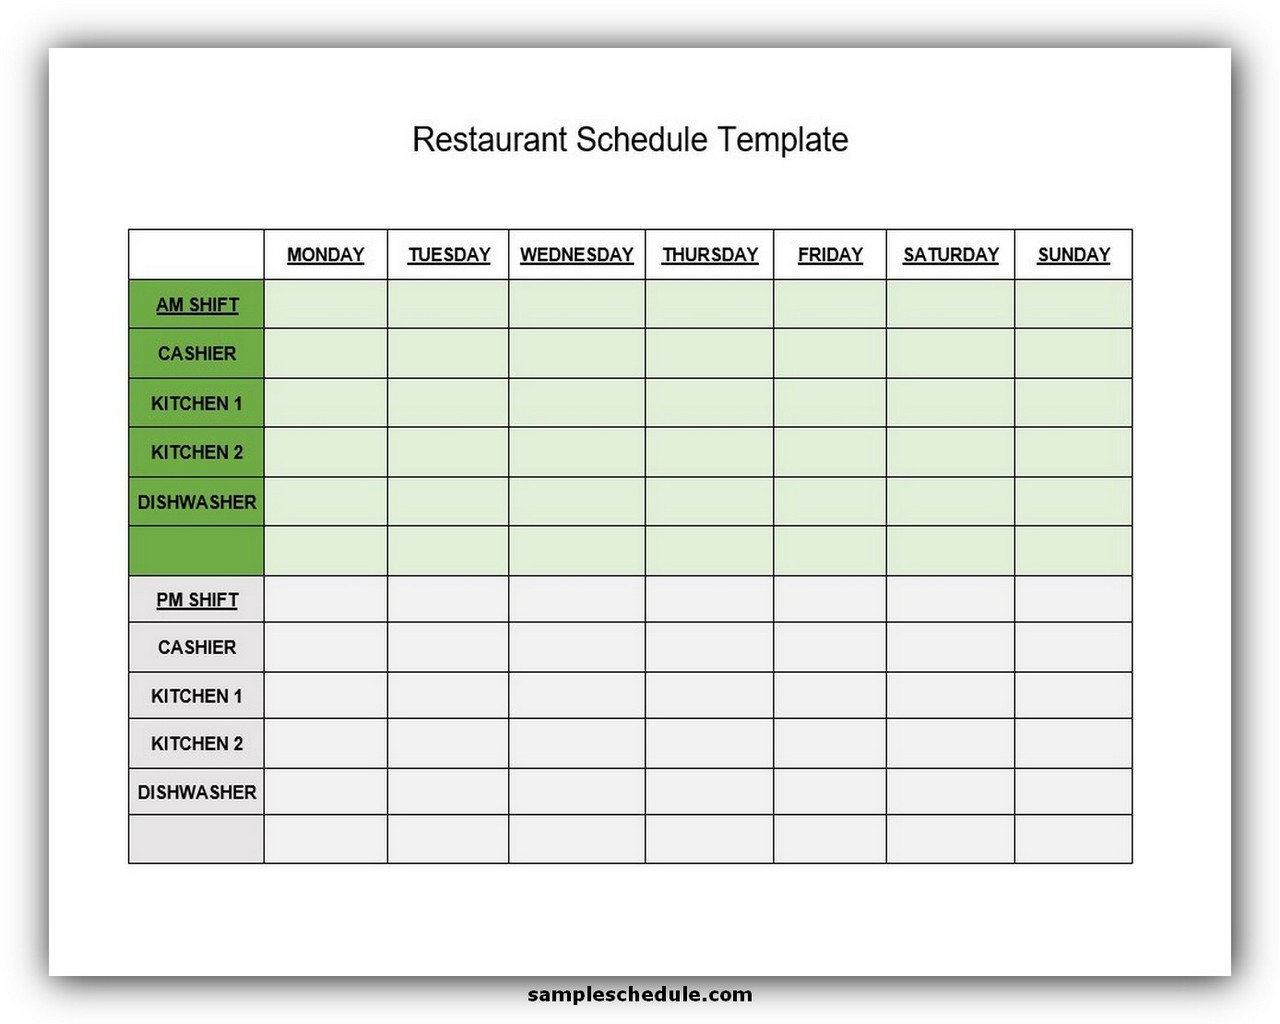 restaurant-schedule-template-excel